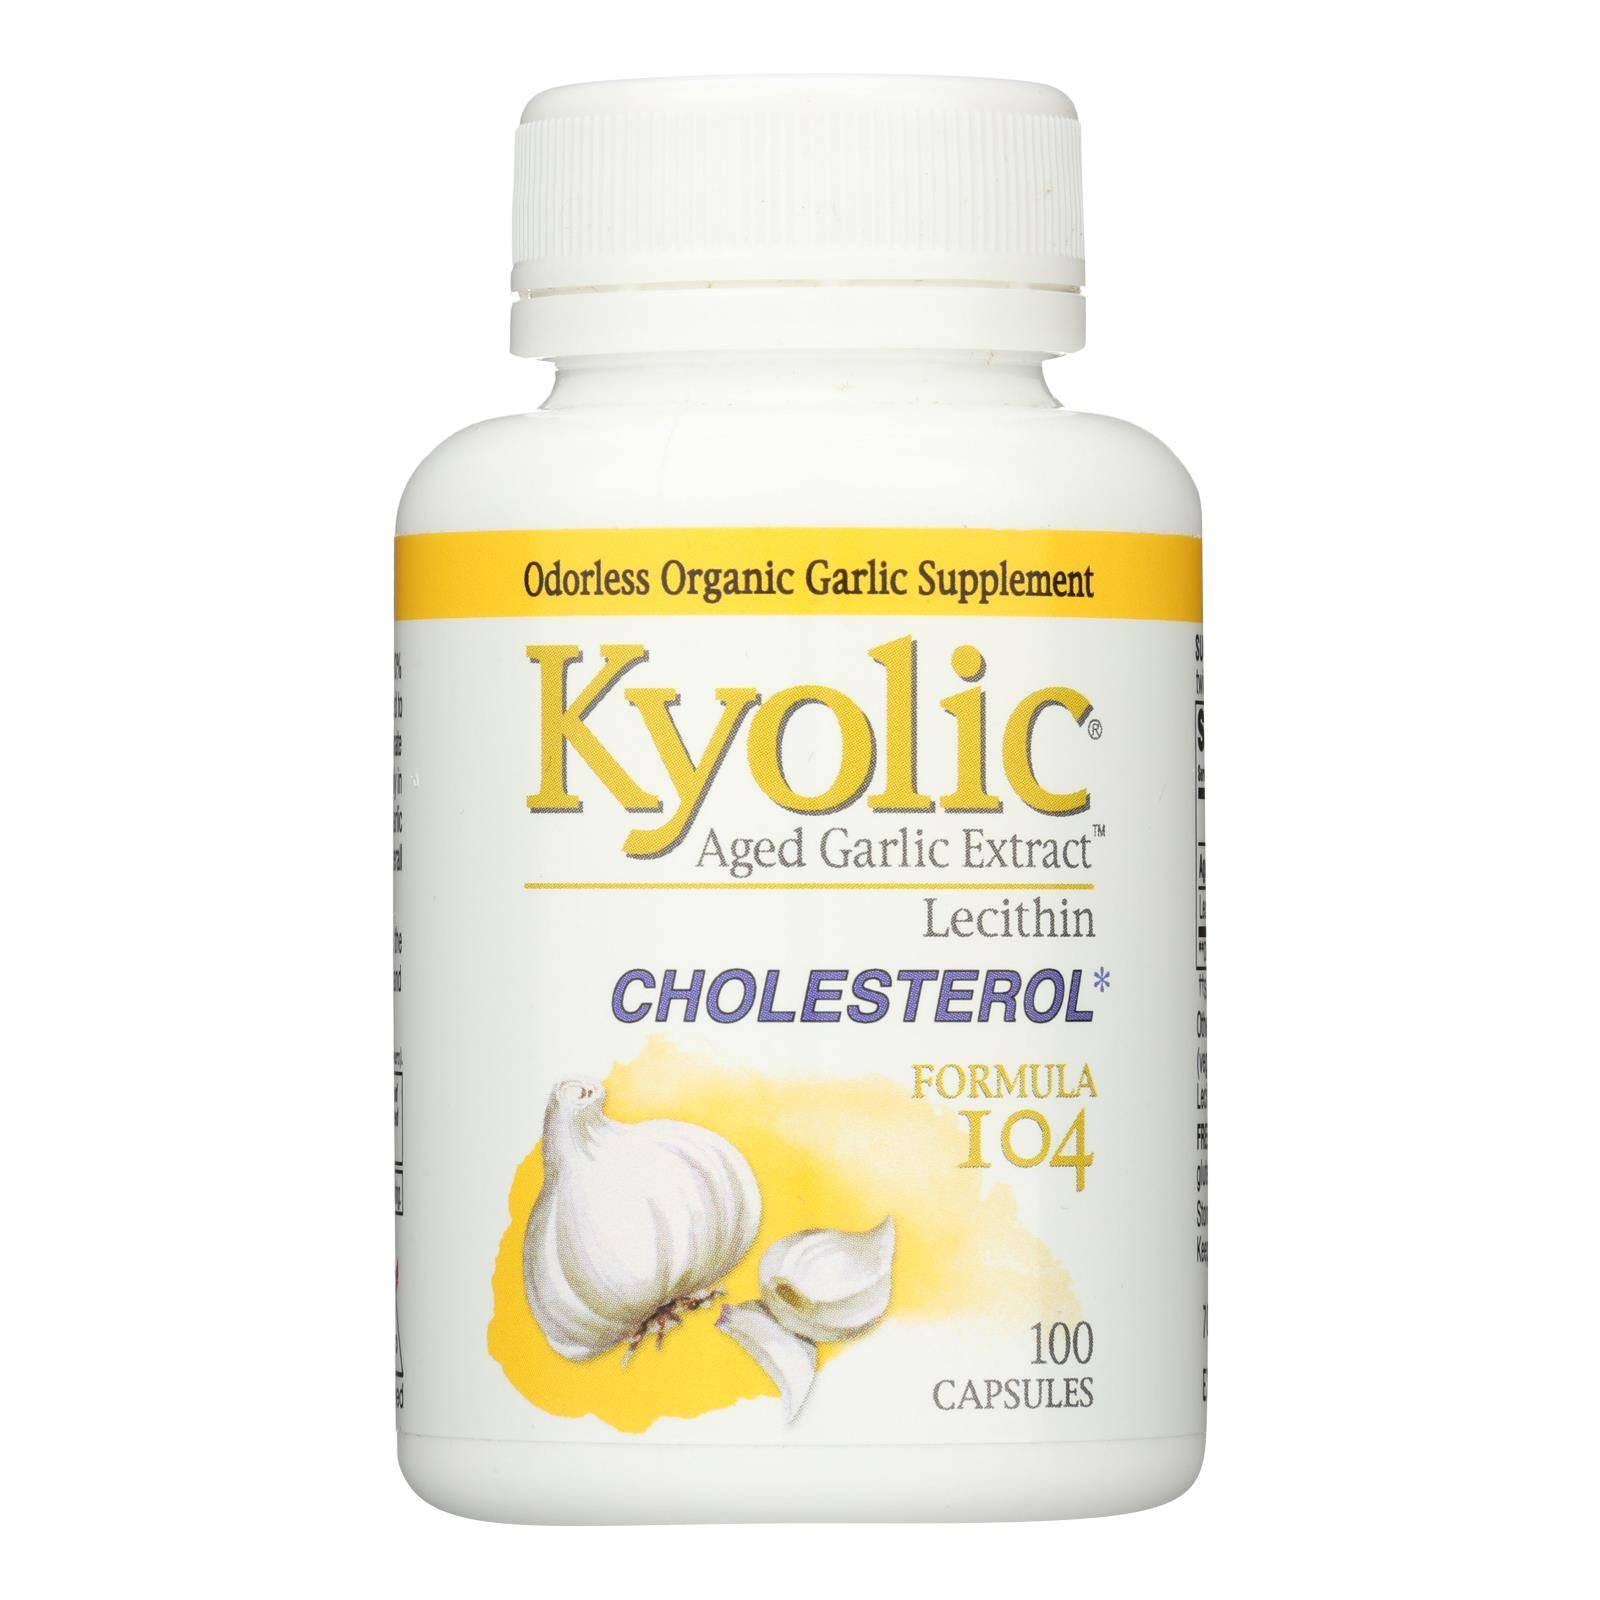 Buy Kyolic - Aged Garlic Extract Cholesterol Formula 104 - 100 Capsules  at OnlyNaturals.us